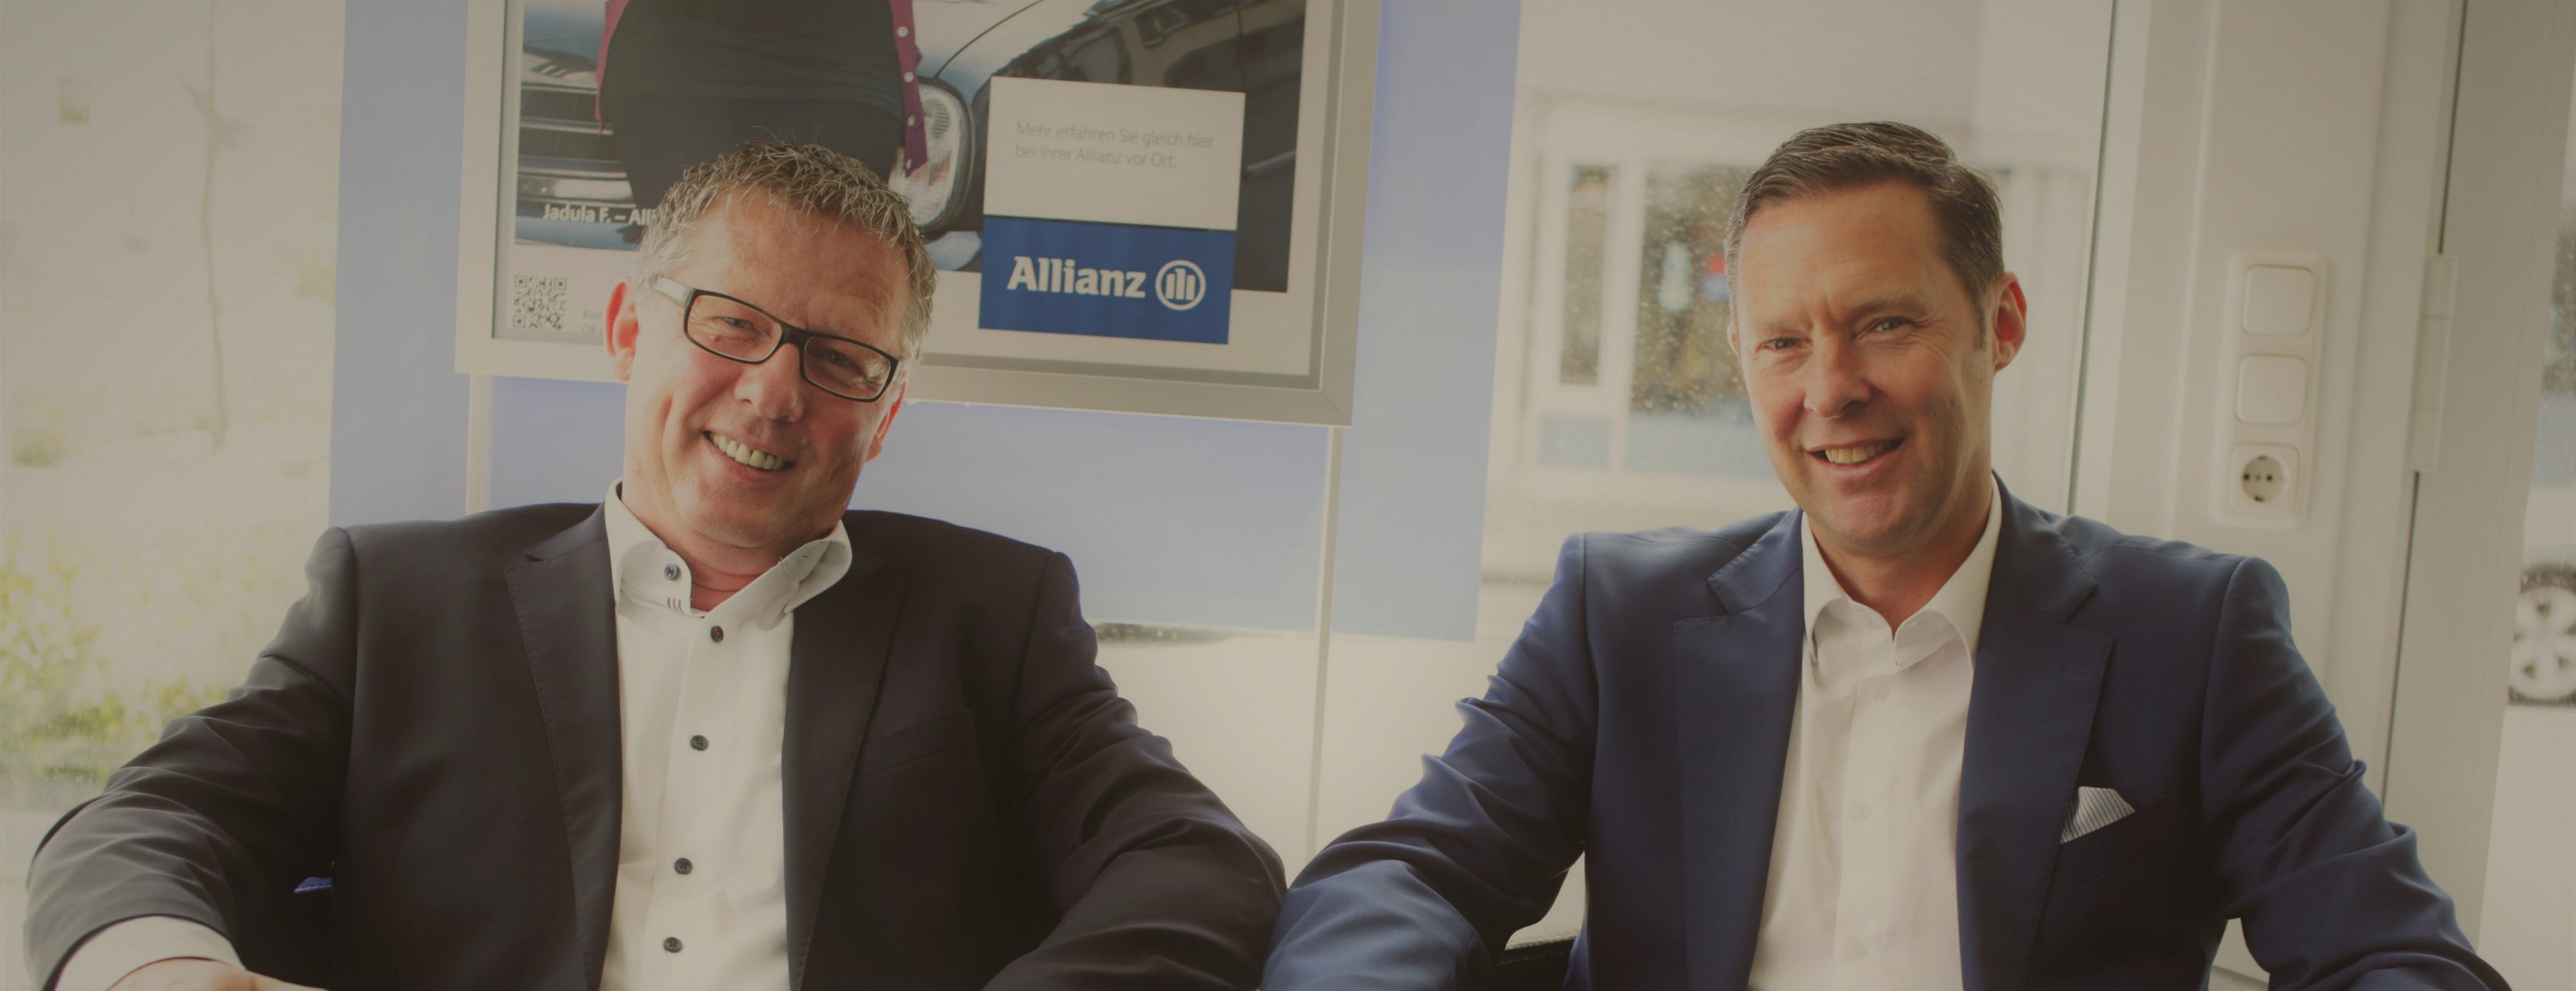 Allianz Versicherung Witt und Bley OHG Cloppenburg - Ihr Team in Cloppenburg